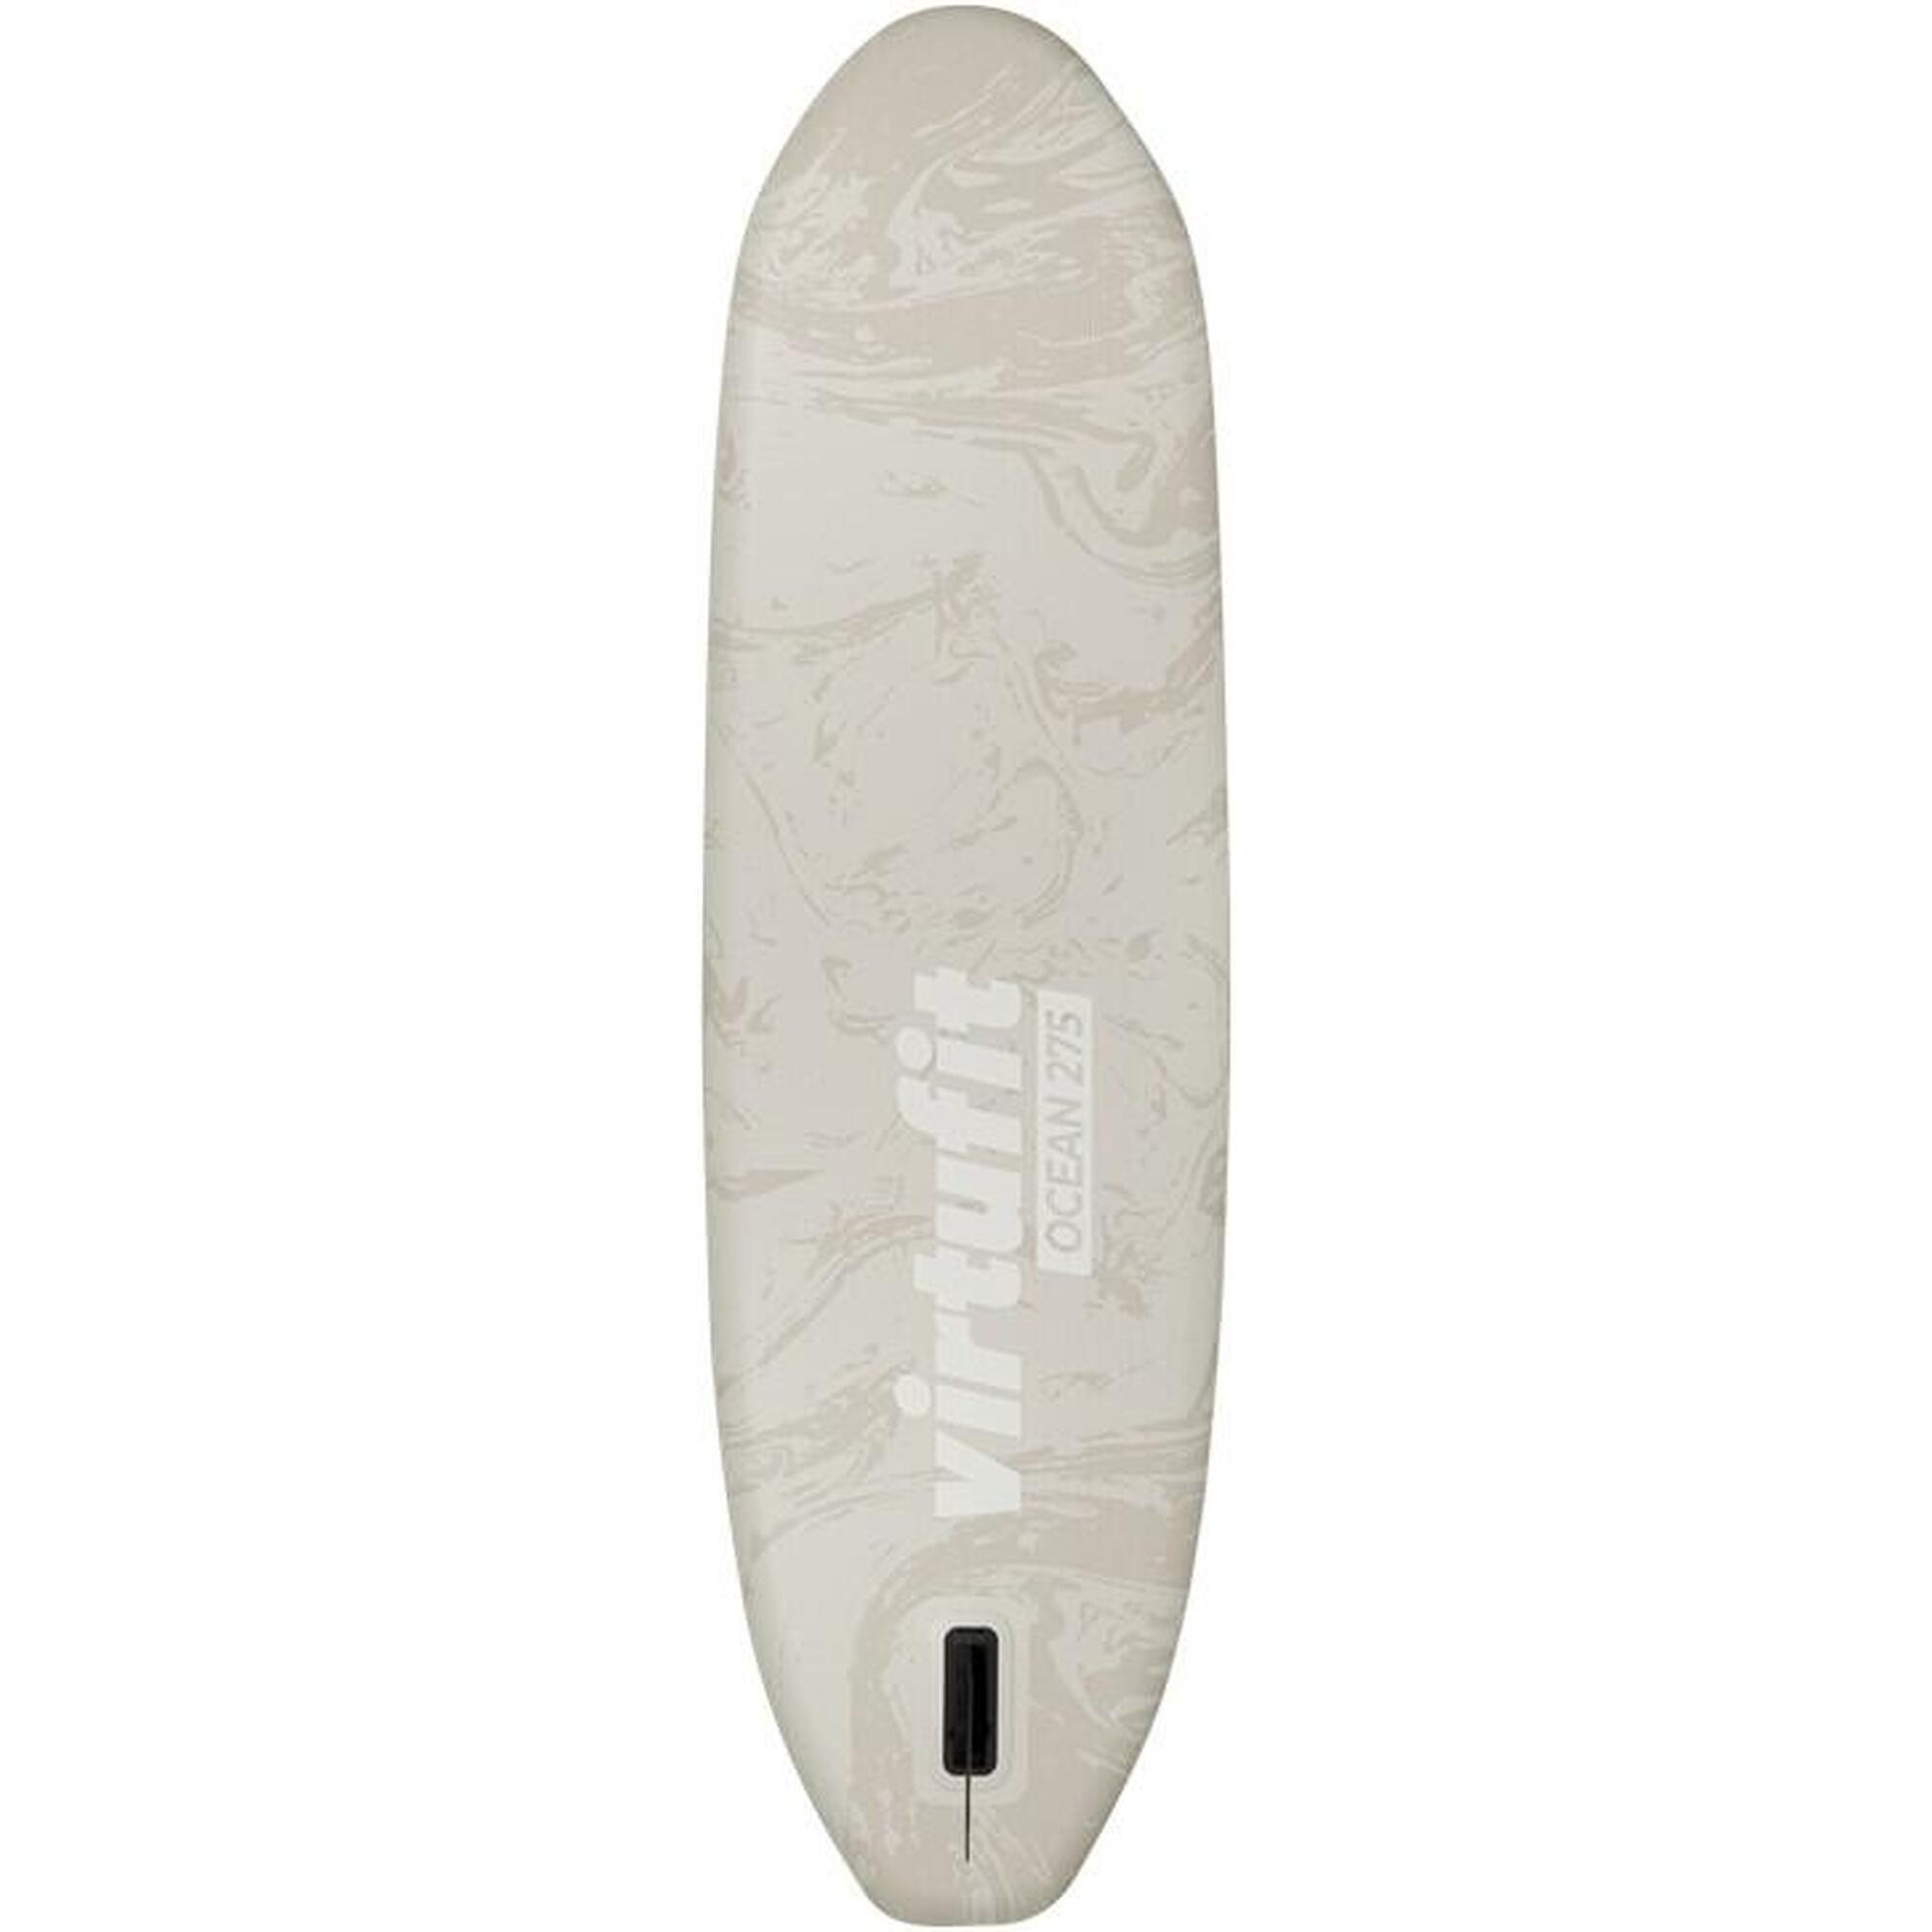 Tabla paddle surf - Ocean 275 - Beige - Con accesorios